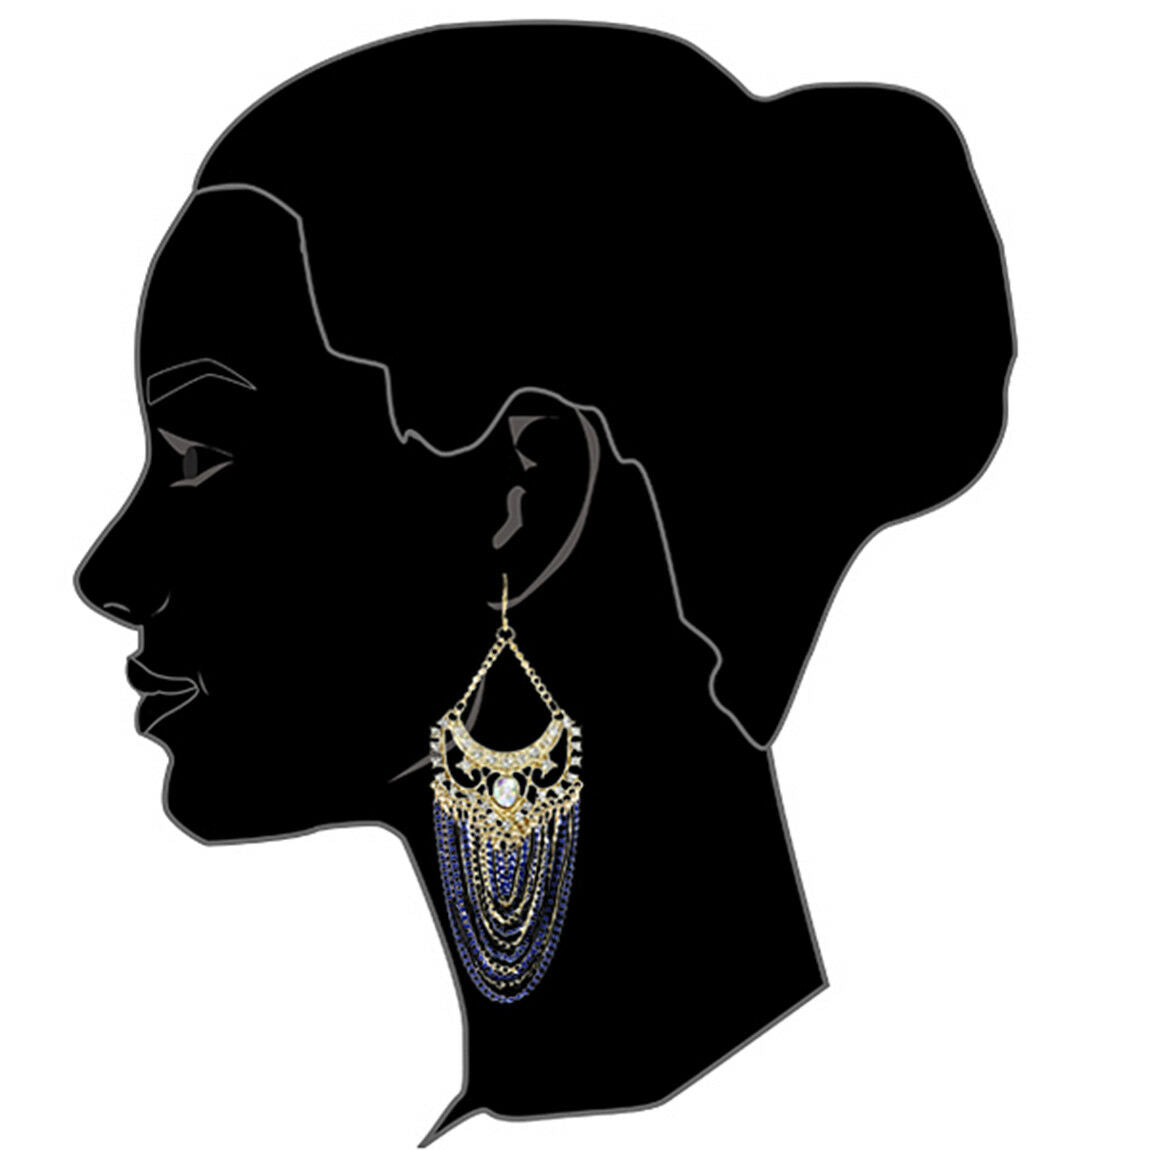 Amrita Singh Gold Crystal Elizabeth Street Blue Chain Earrings ERC 2027 NWT